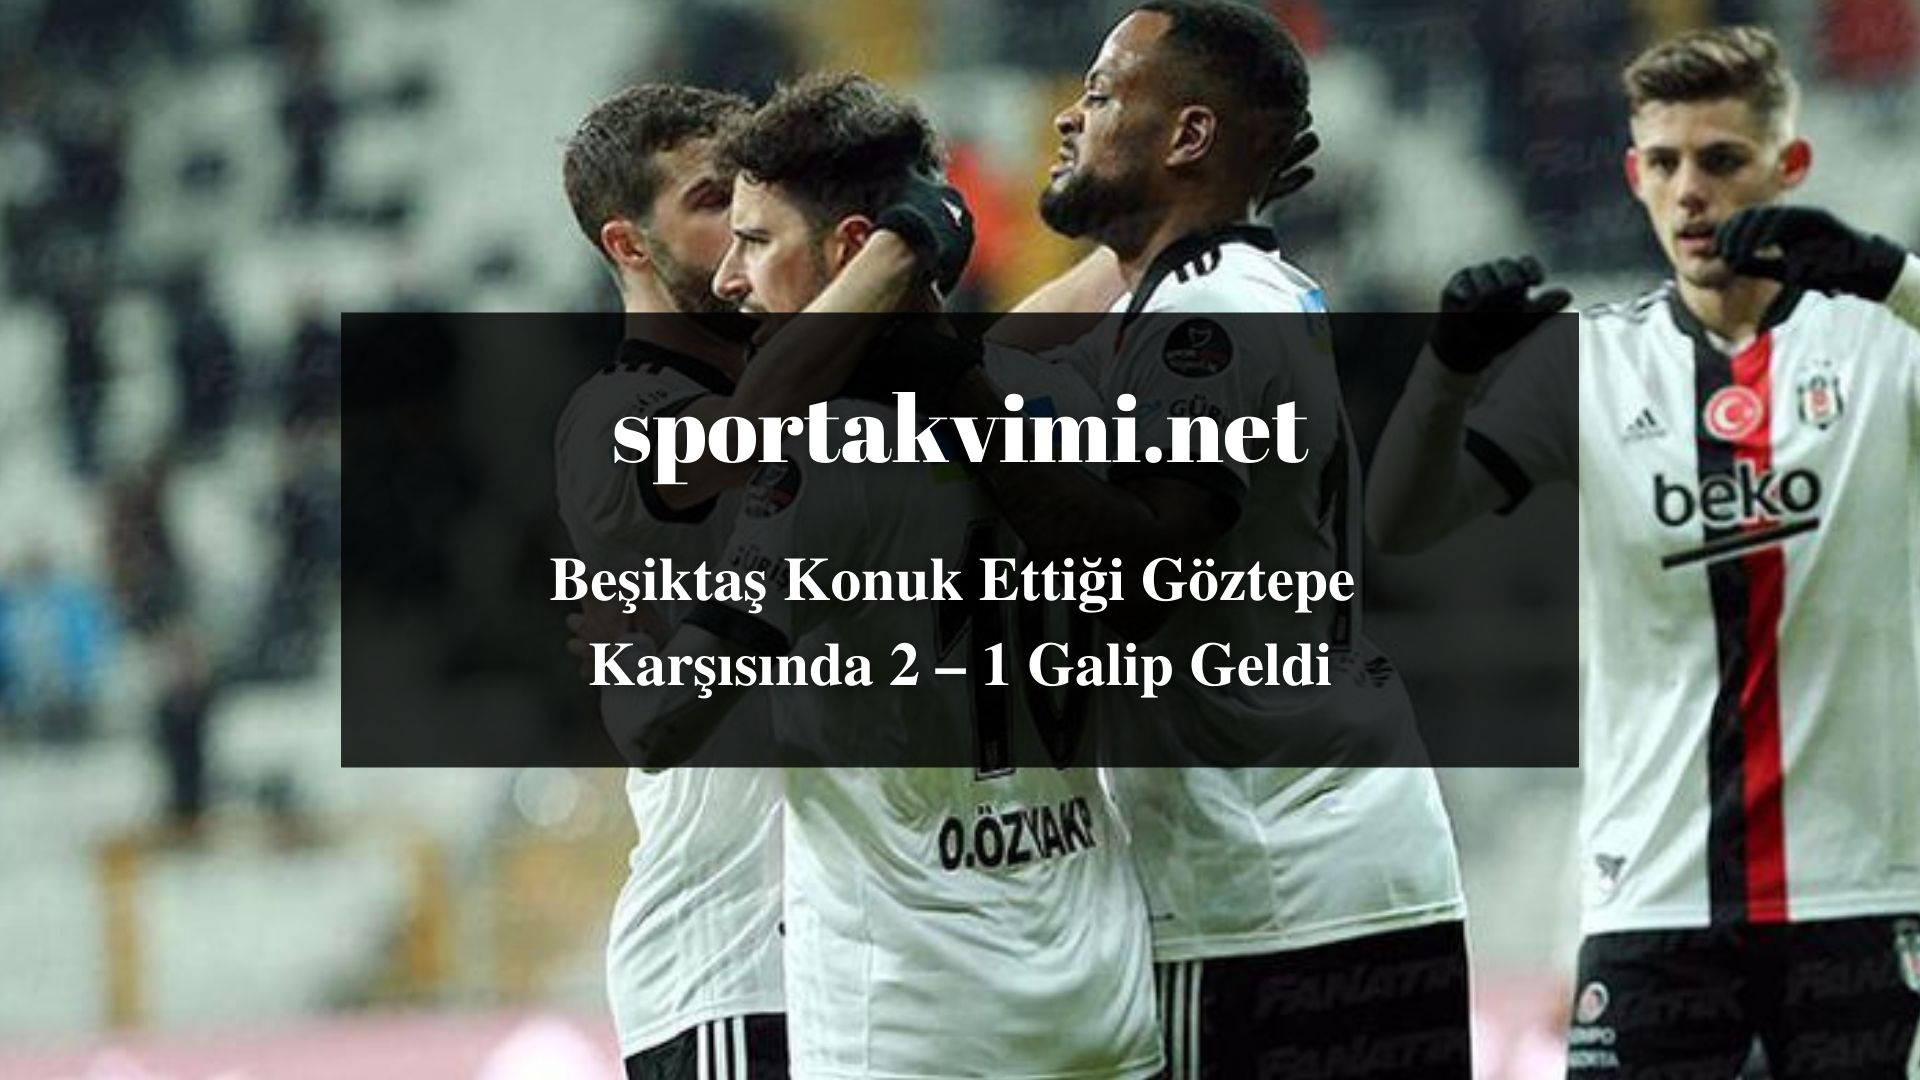 Beşiktaş Konuk Ettiği Göztepe Karşısında 2 – 1 Galip Geldi